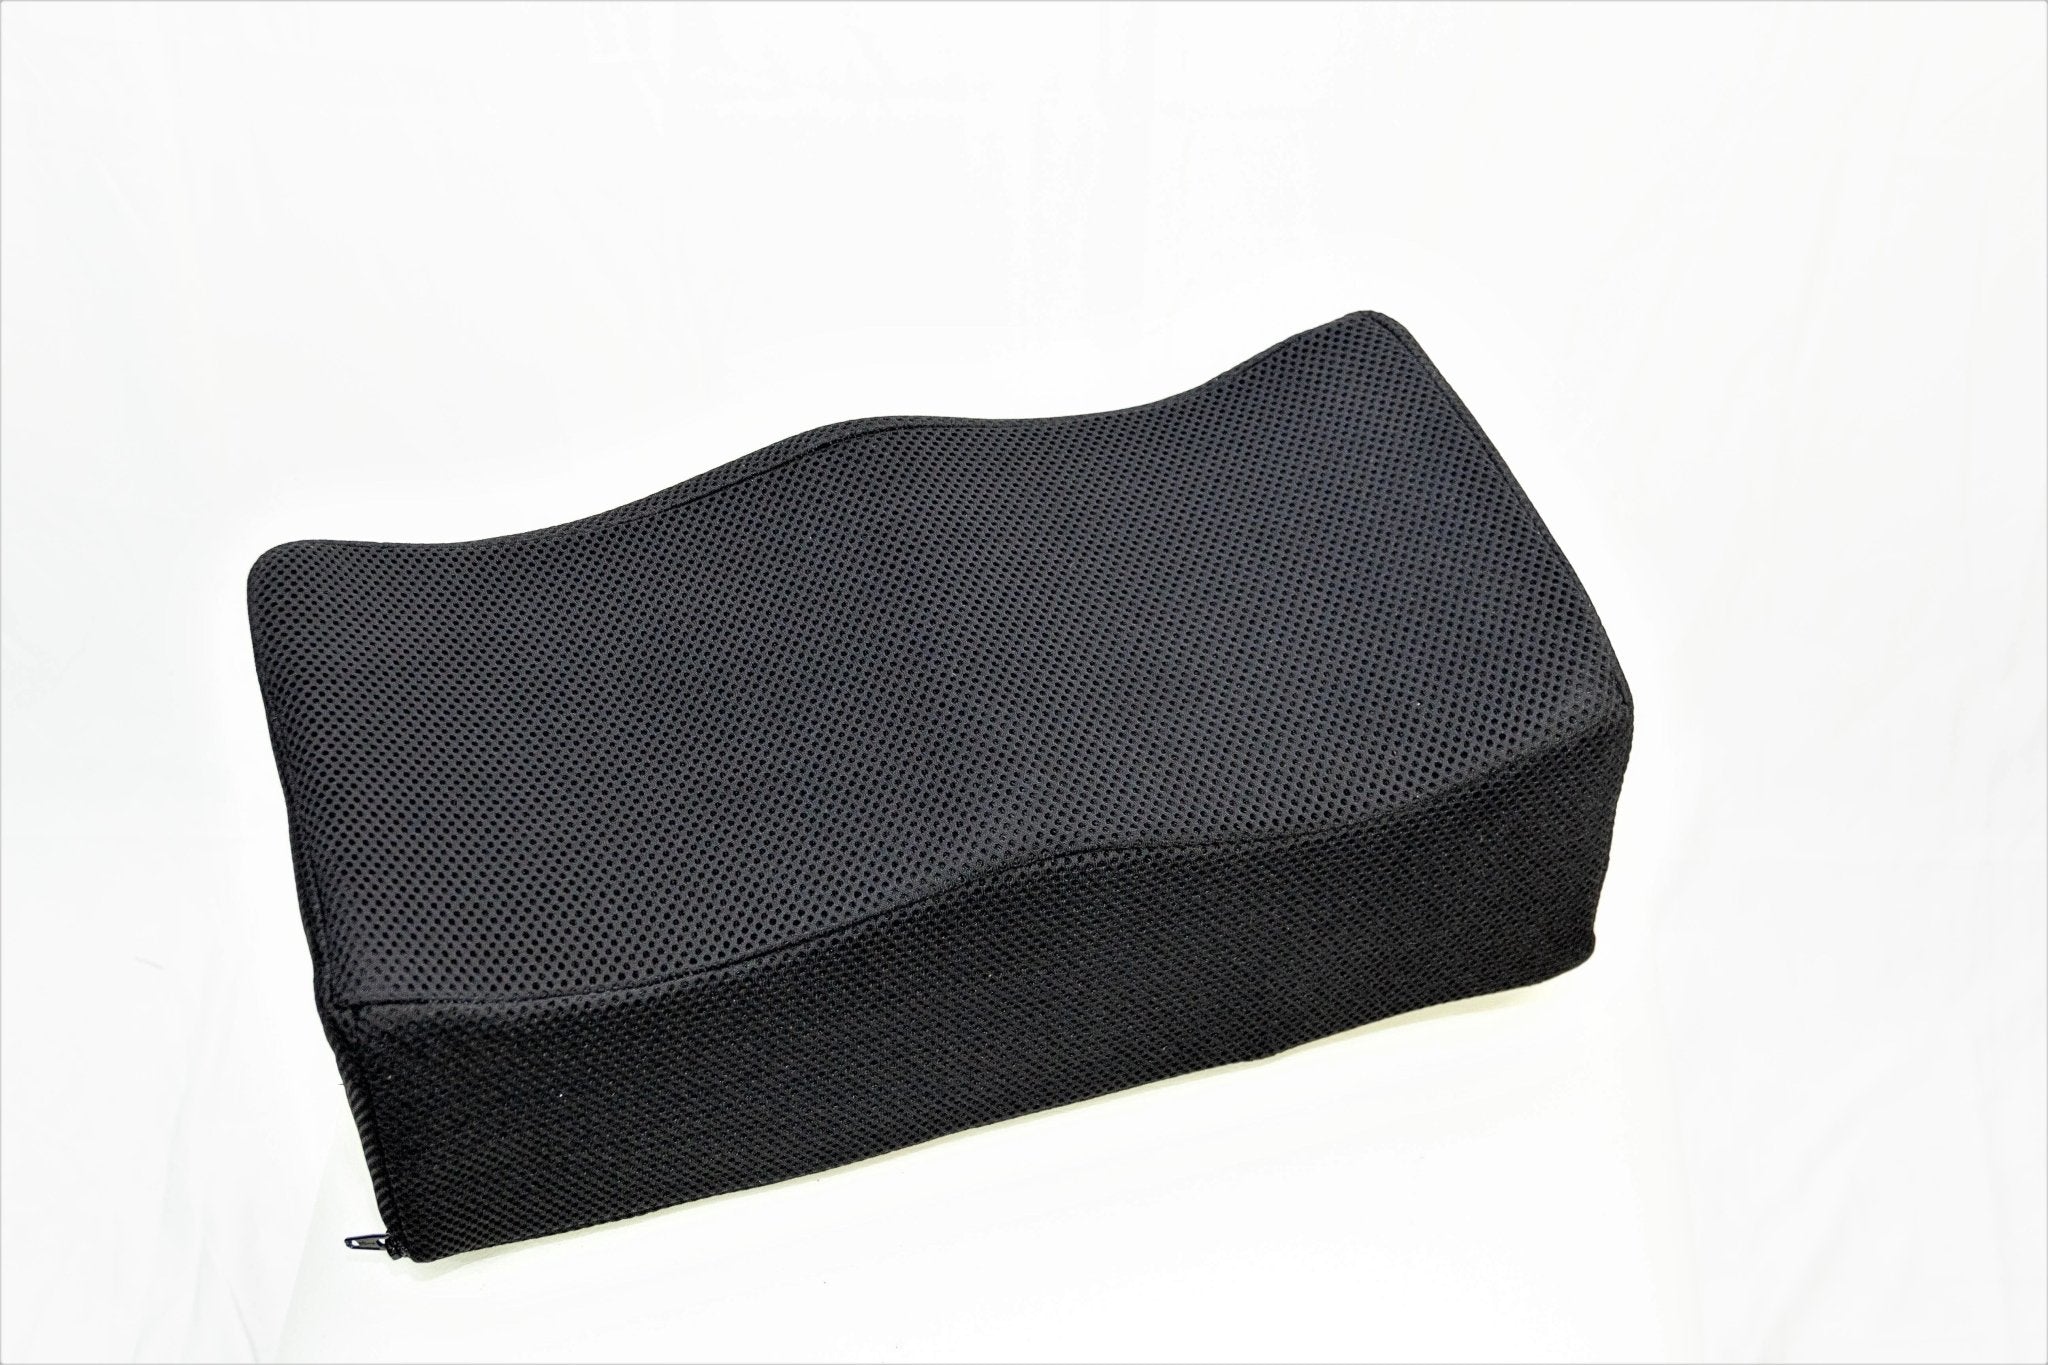 BBL Foam Pillow / Post Brazilian butt Surgery Recovery – Firm Butt Support Cushion - Sexyskinz Shapewear Fajas